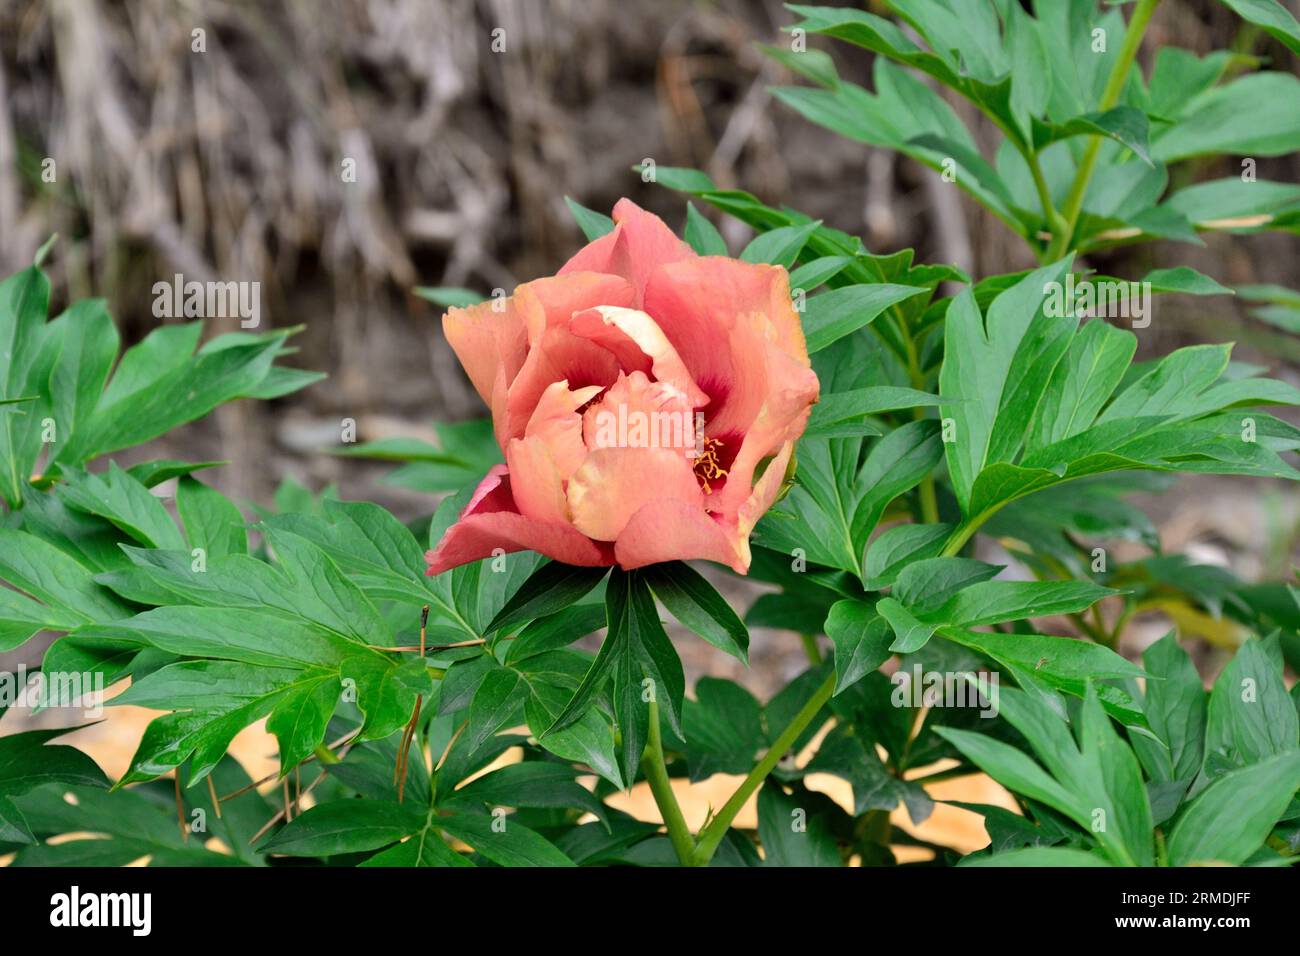 Merveilleuse variété de fleurs de pivoine Old Rose Dandy au début de la floraison est beige jaunâtre avec une teinte violette, plus tard une délicieuse couleur brun-rouge. Rouge s Banque D'Images